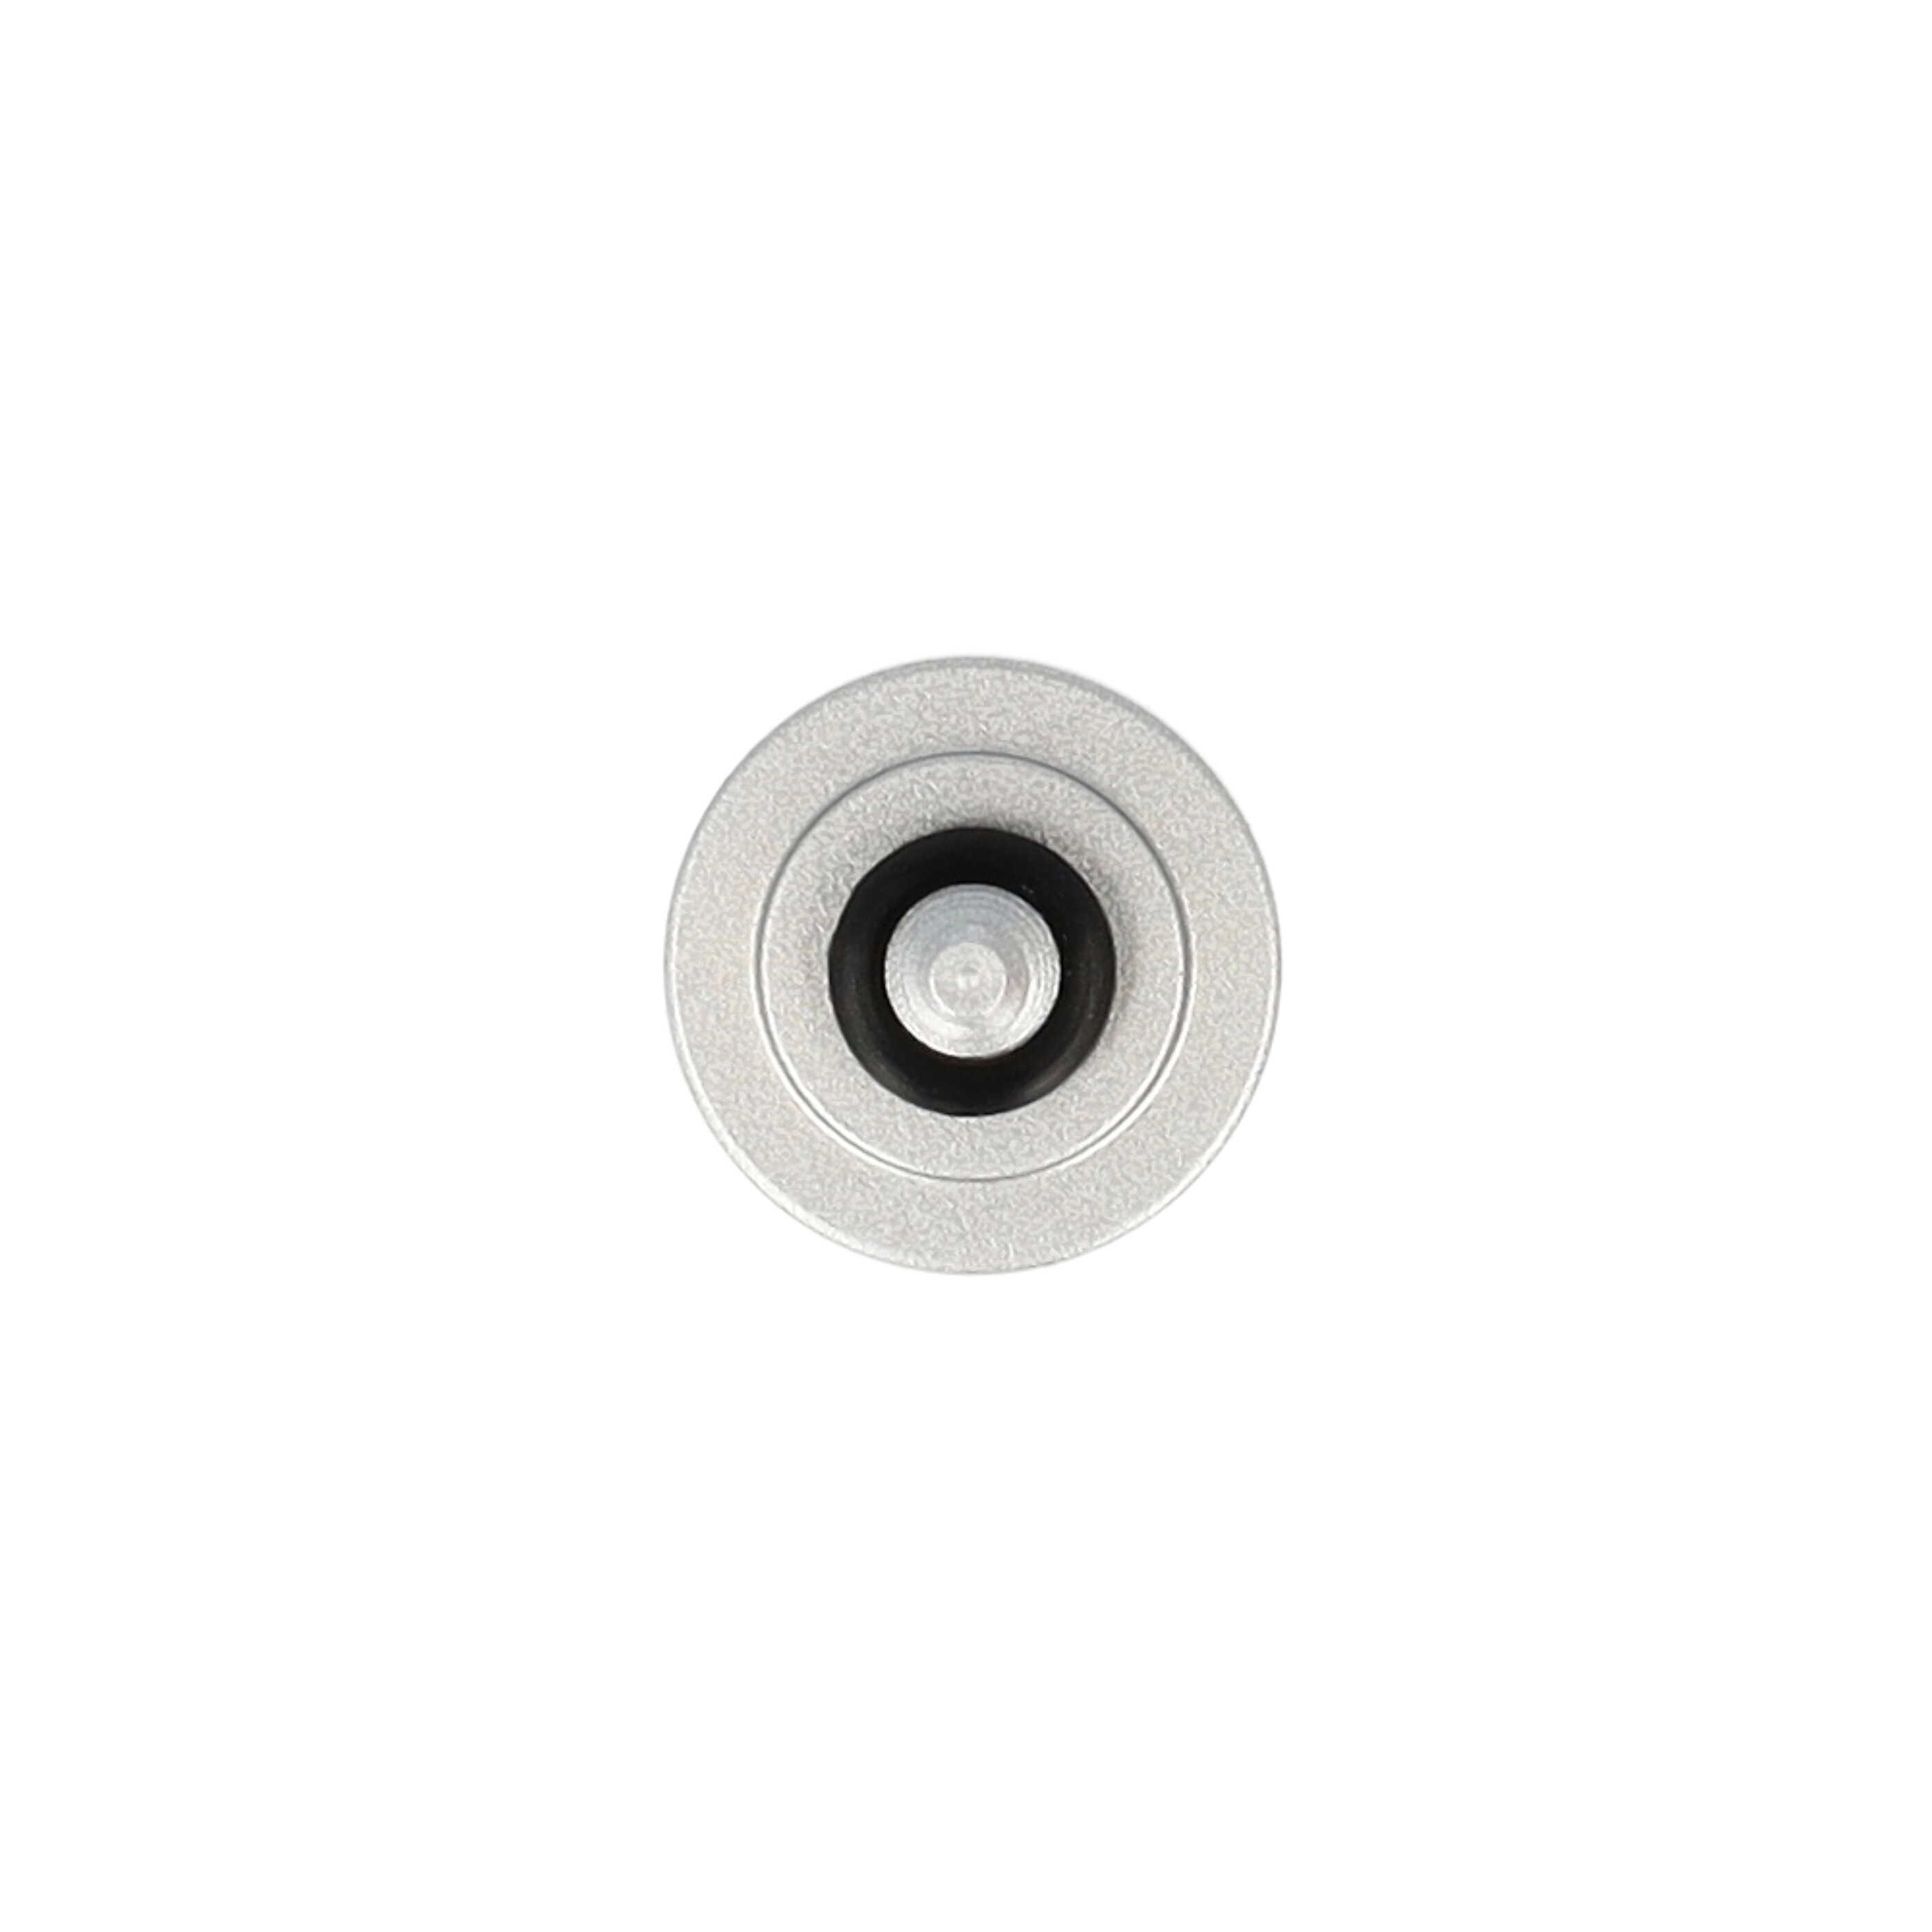 Przycisk spustu migawki do aparatu X-E1 Fujifilm - metal, srebrny